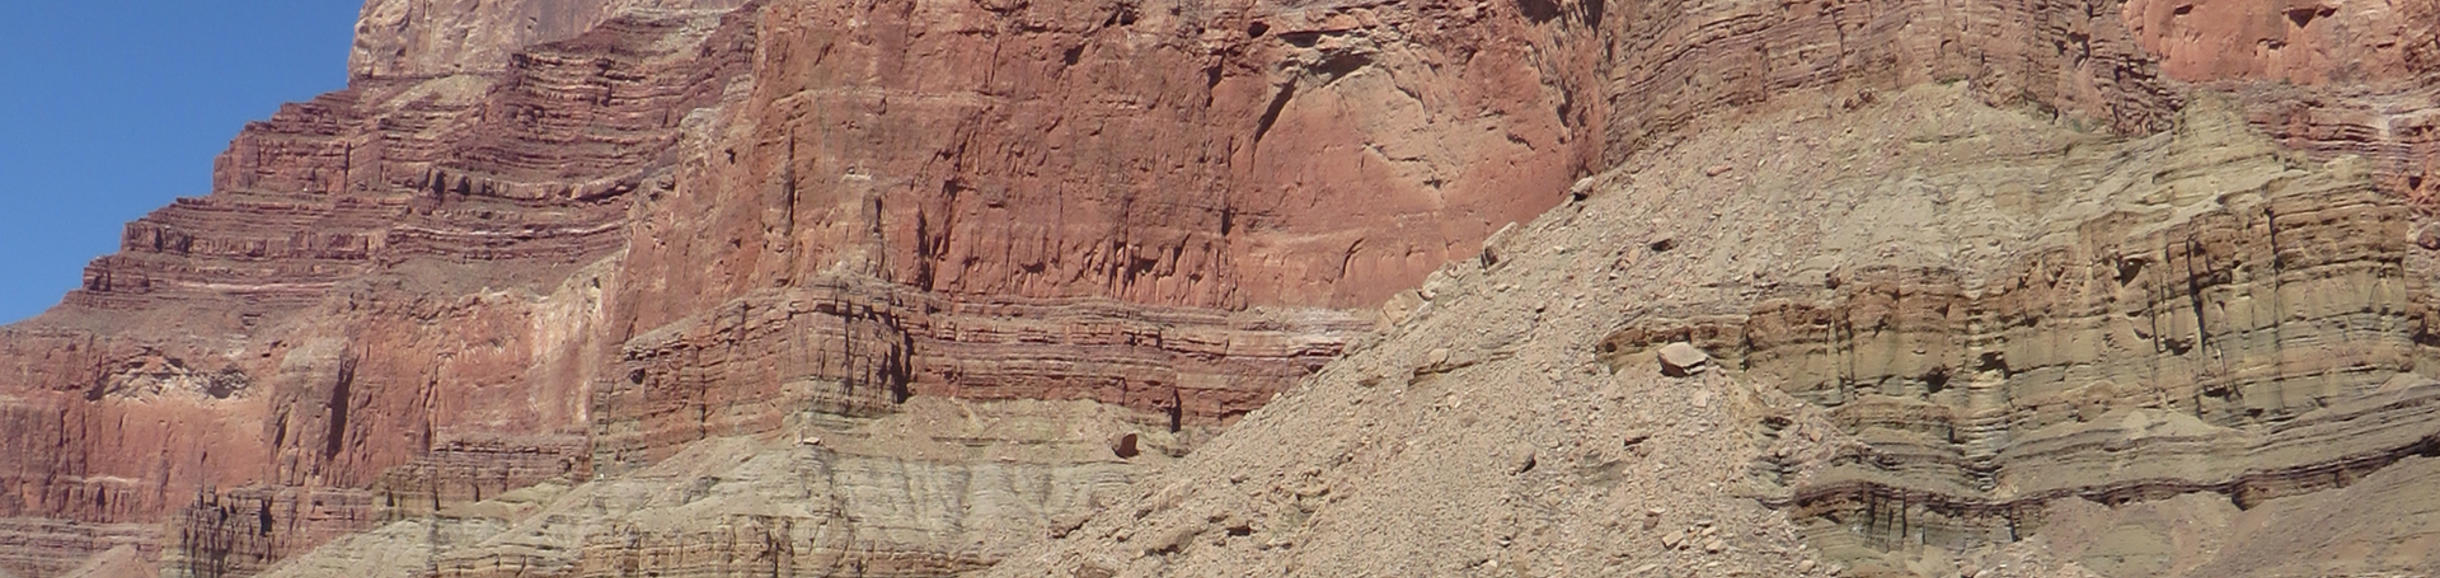 colorado rock formations